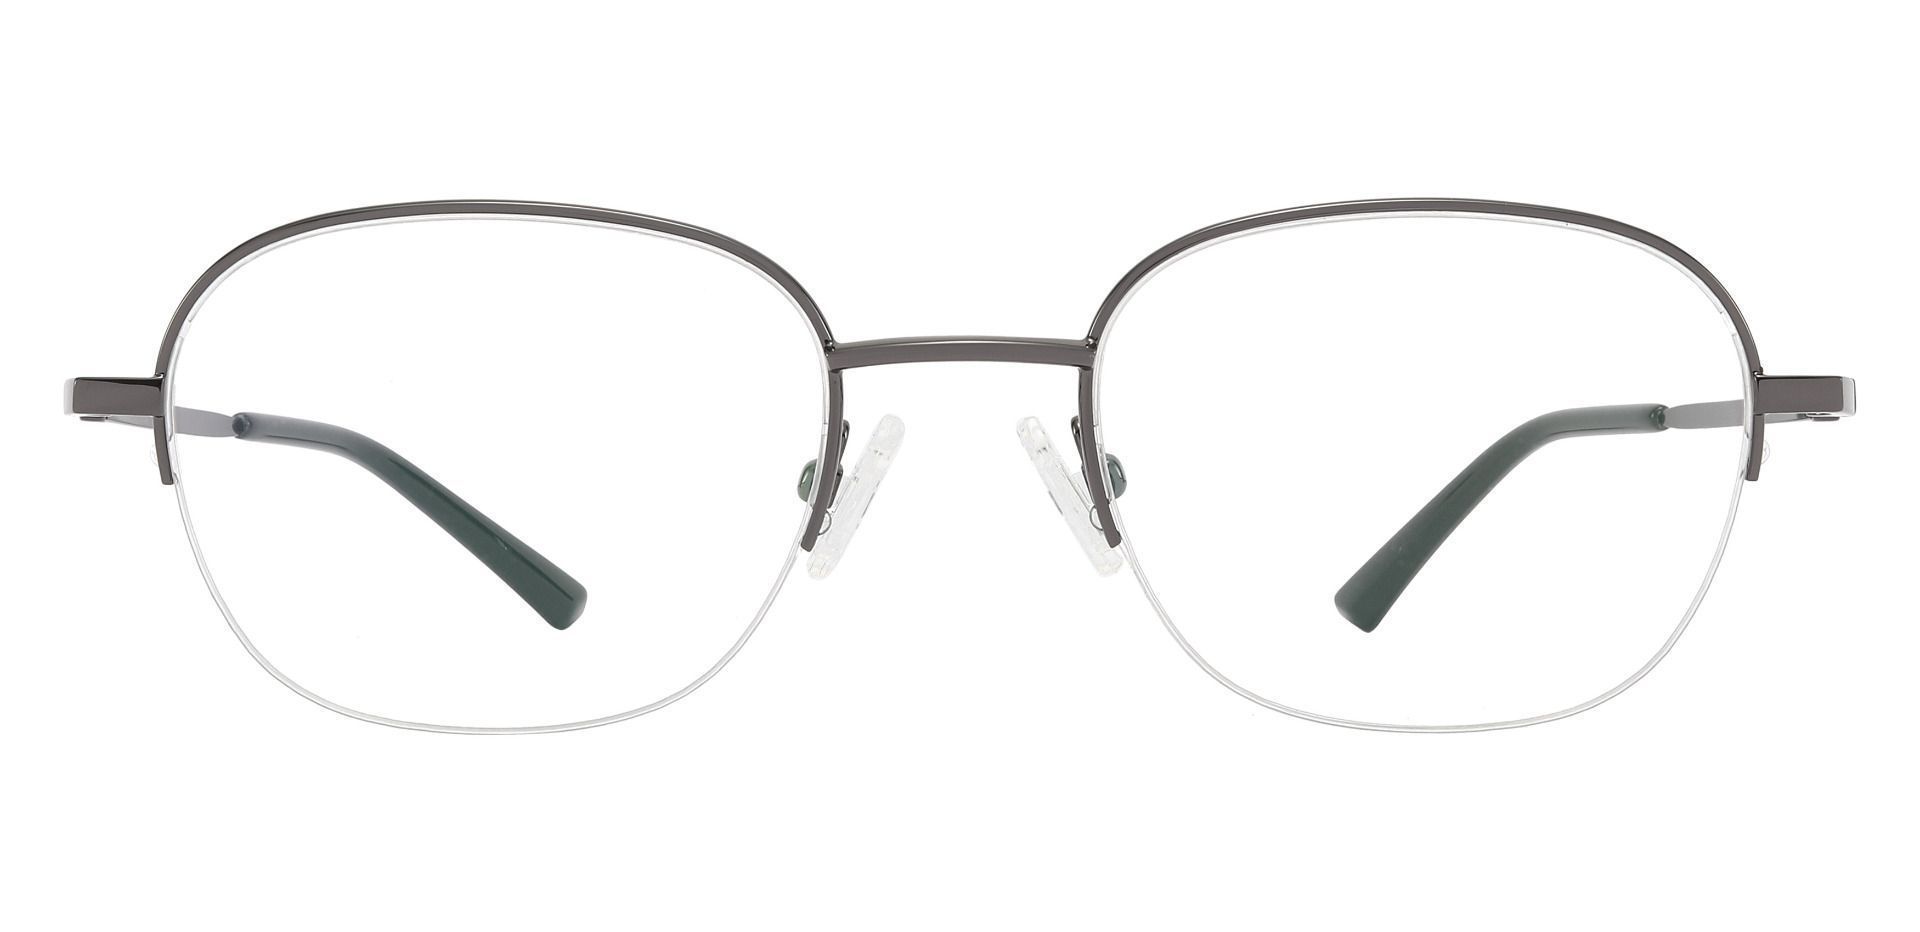 Rochester Oval Non-Rx Glasses - Gray